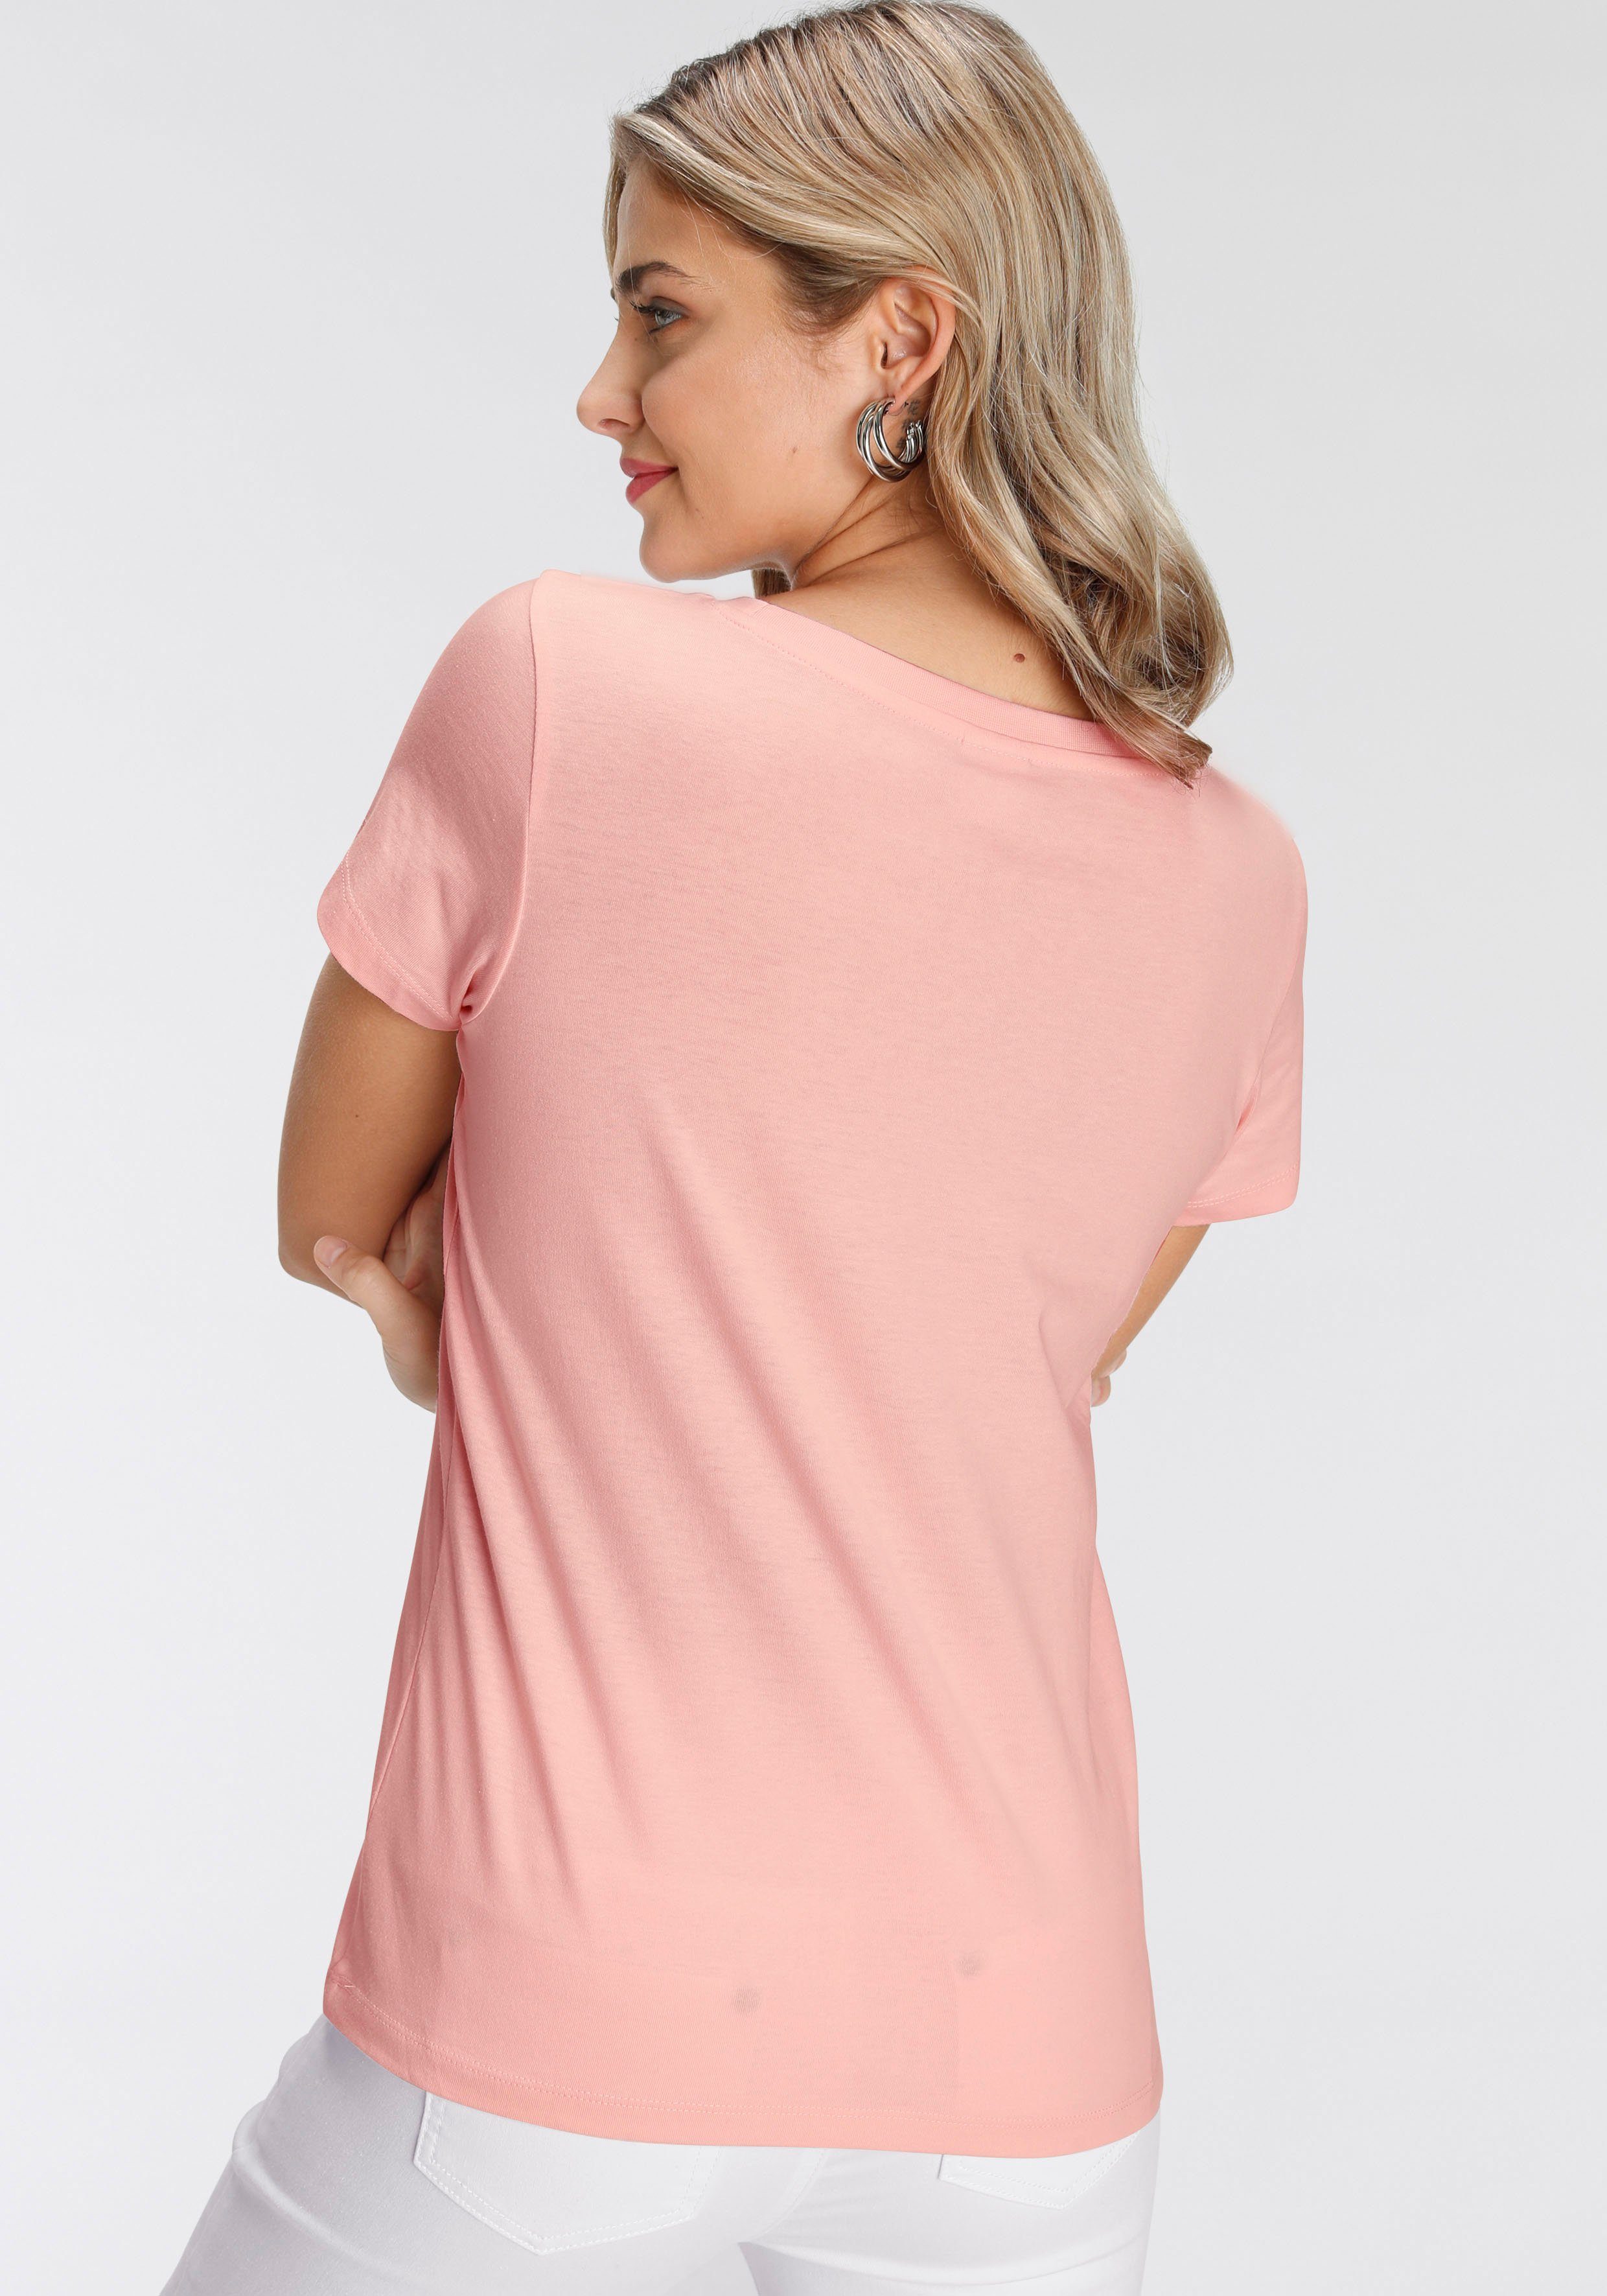 Print-Shirt in rosa verschiedenen modischen AJC Designs